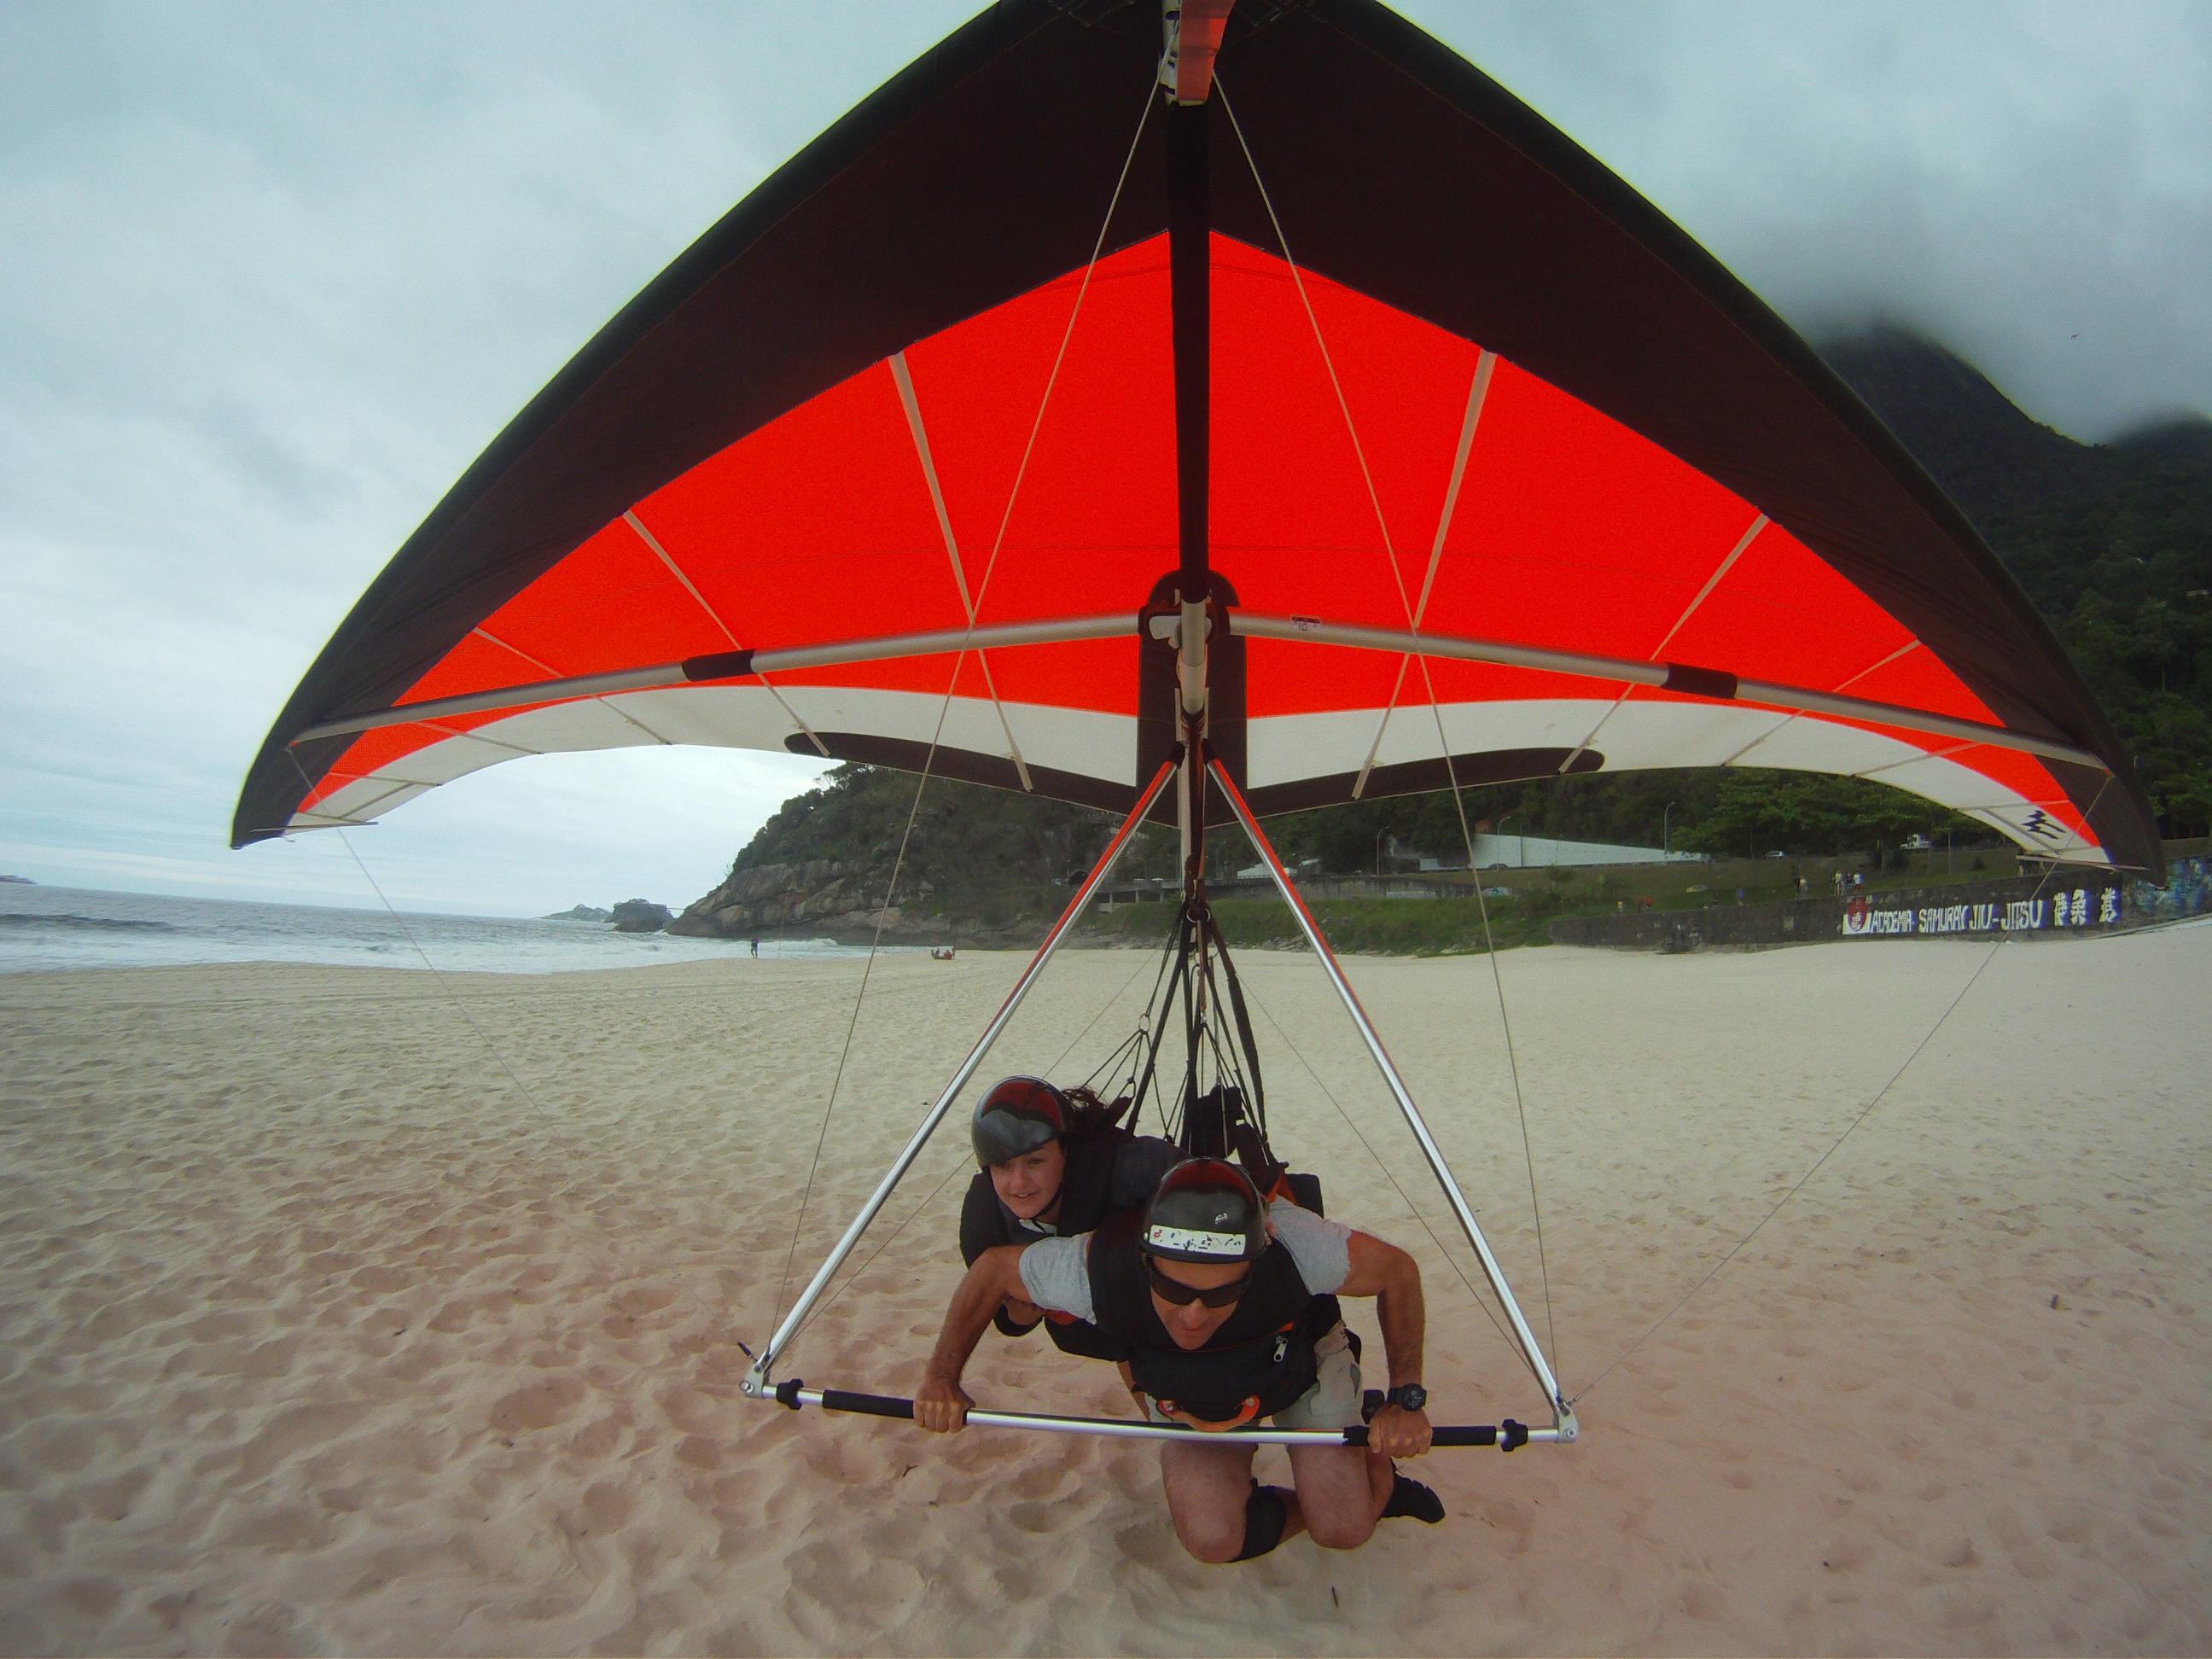 Hang_Glider_buzzing_So_Conrado_Beach_Rio_de_Janeiro.jpg